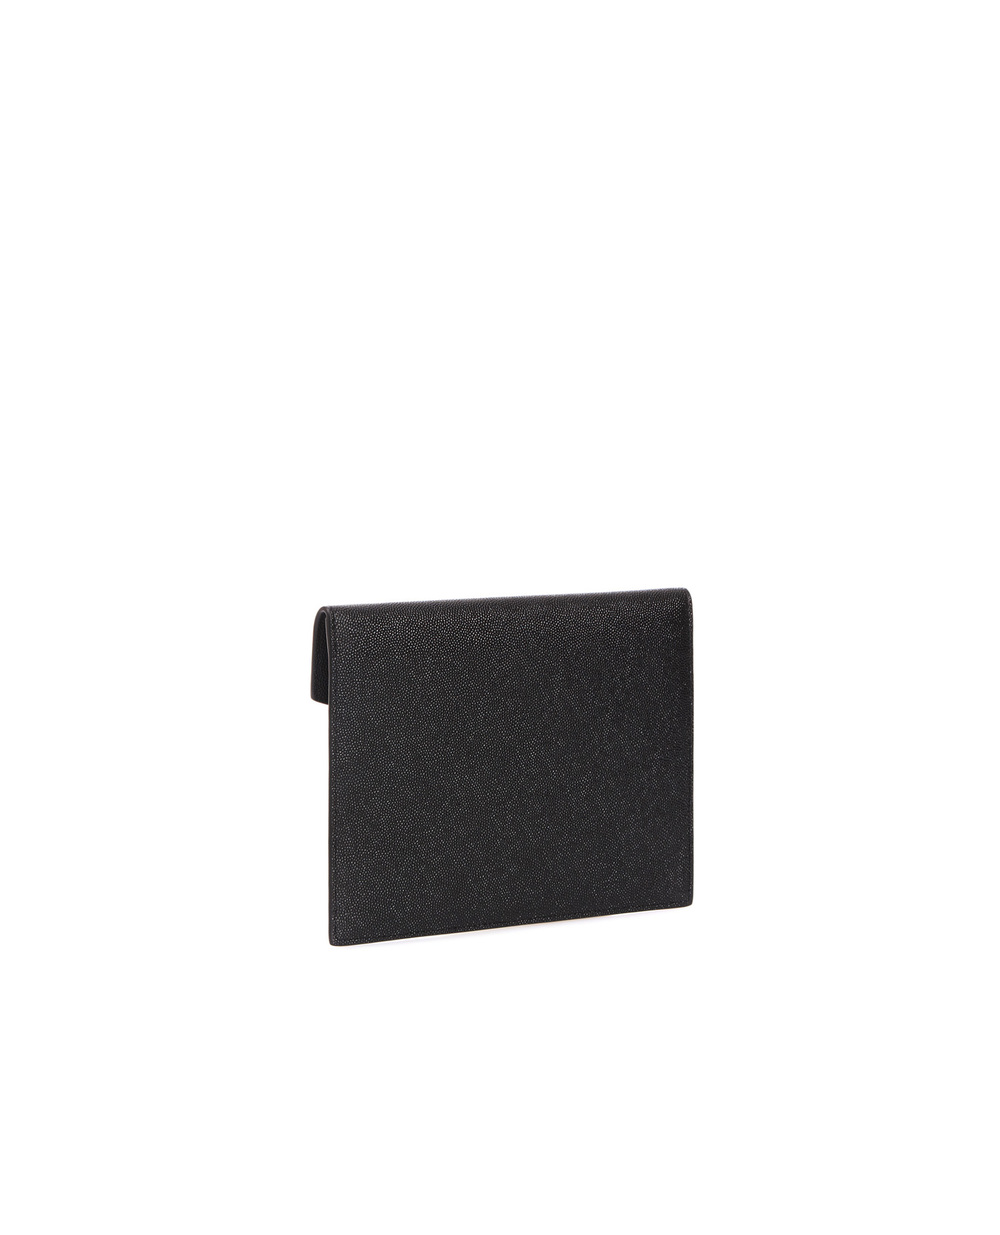 Кожаный клатч Monogram Saint Laurent 565733-1GF0J, черный цвет • Купить в интернет-магазине Kameron